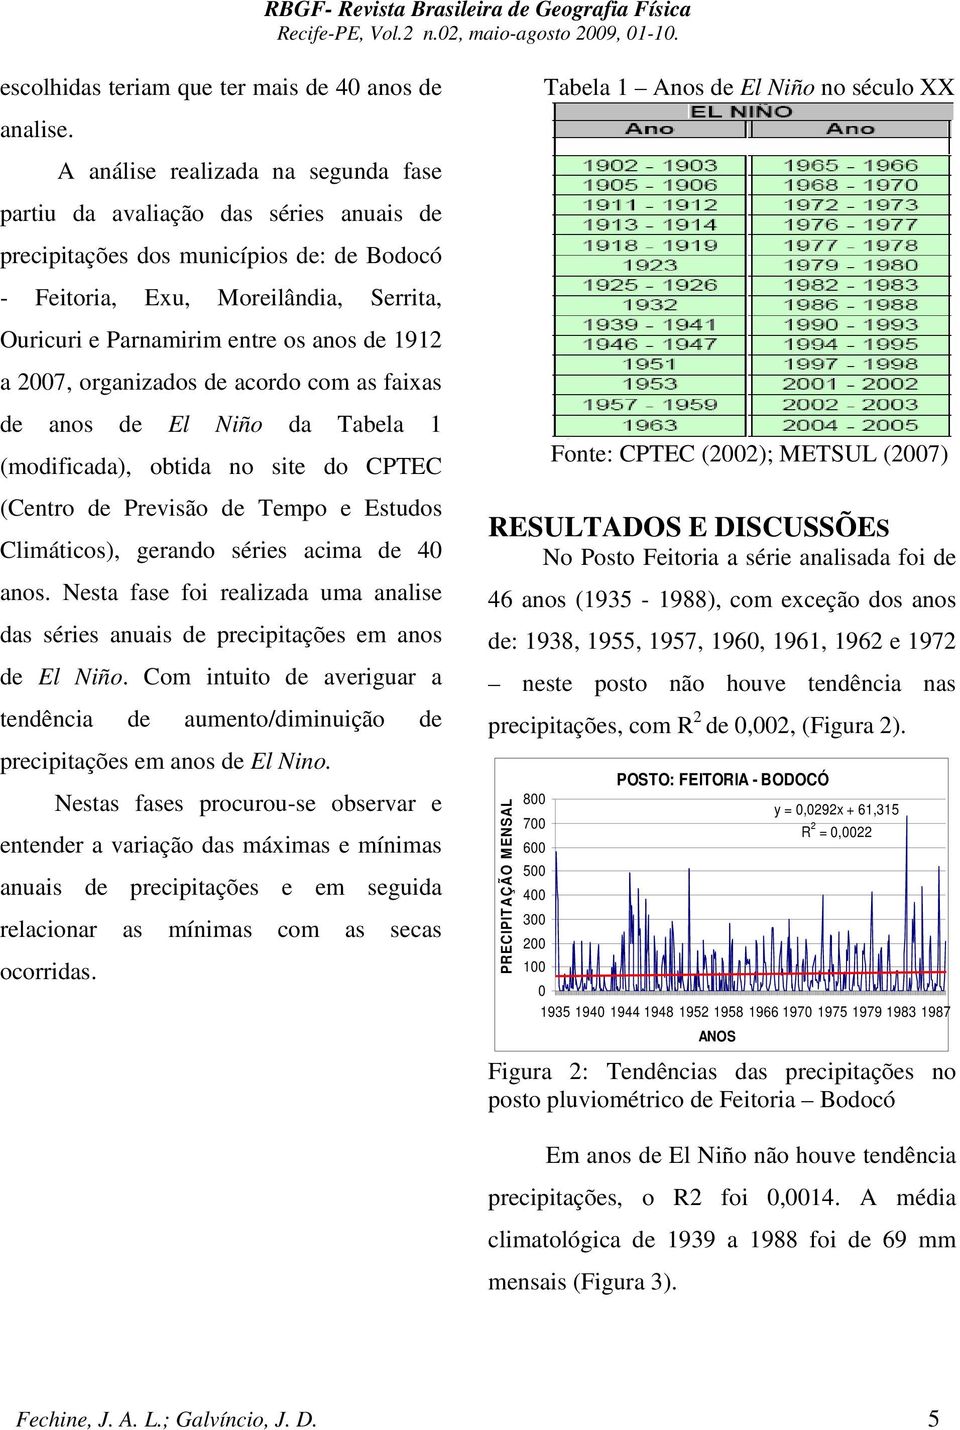 1912 a 7, organizados de acordo com as faixas de anos de El Niño da Tabela 1 (modificada), obtida no site do CPTEC (Centro de Previsão de Tempo e Estudos Climáticos), gerando séries acima de 4 anos.